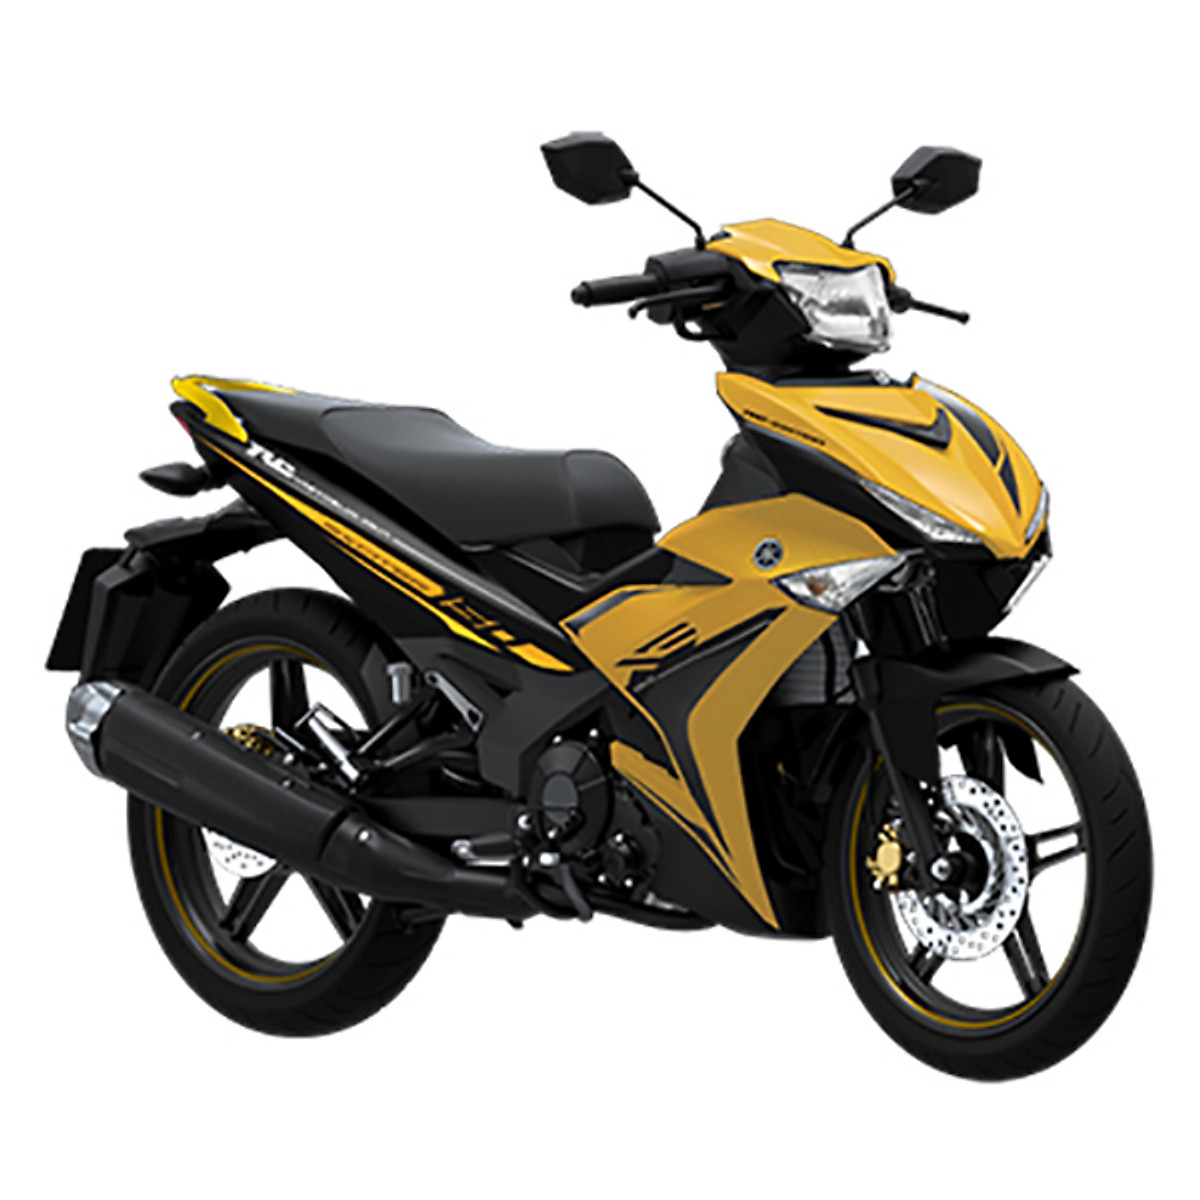 Yamaha Exciter 150 2020 ra mắt tại Thái Lan giá hơn 48 triệu đồng